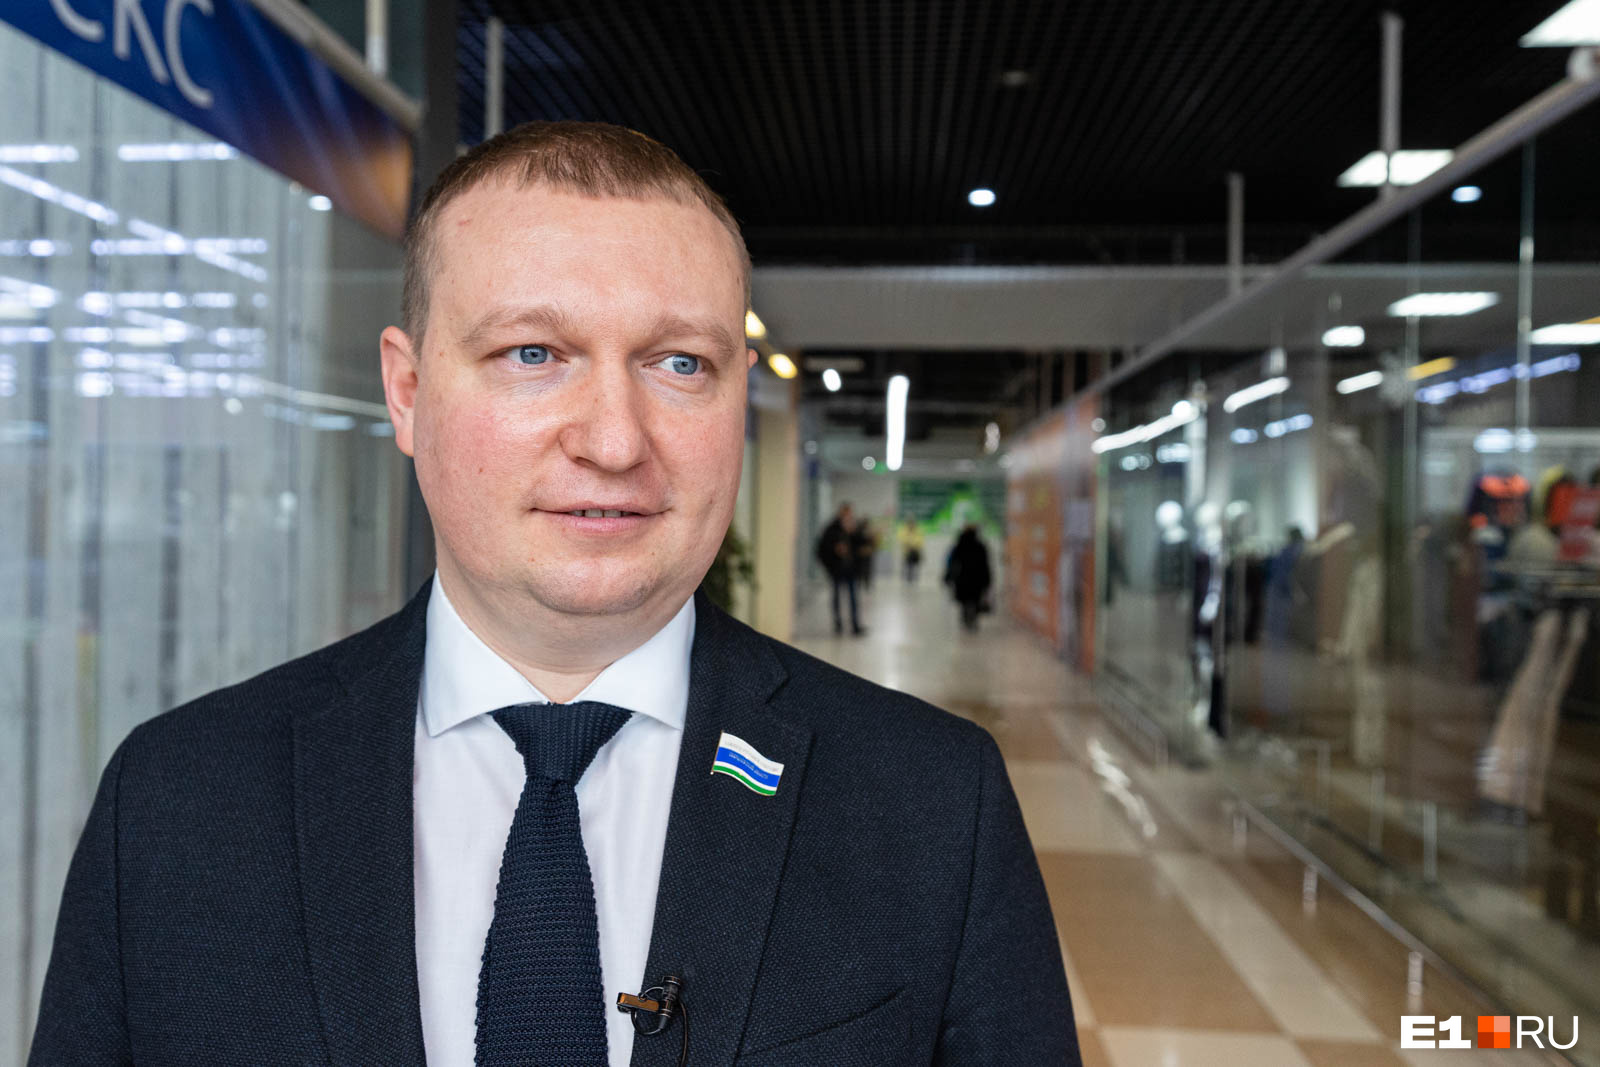 Владимир Смирнов владеет торговыми центрами, самый известный из которых — «Омега» на Уралмаше